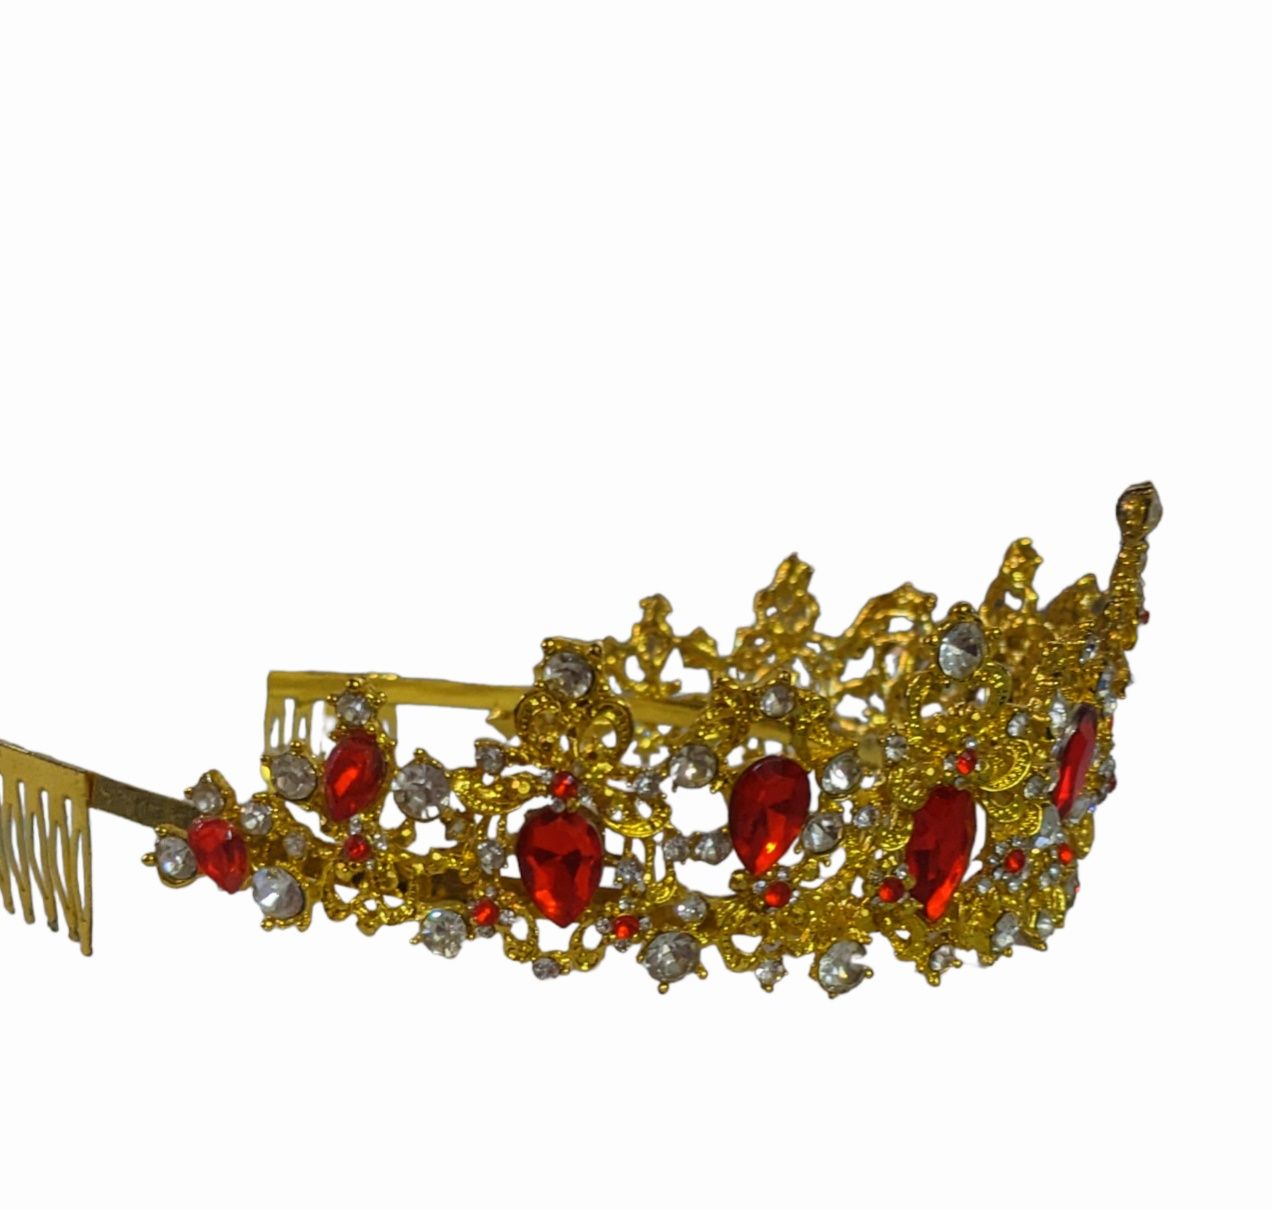 Діадема корона в золотому кольорі з червоними камінцями